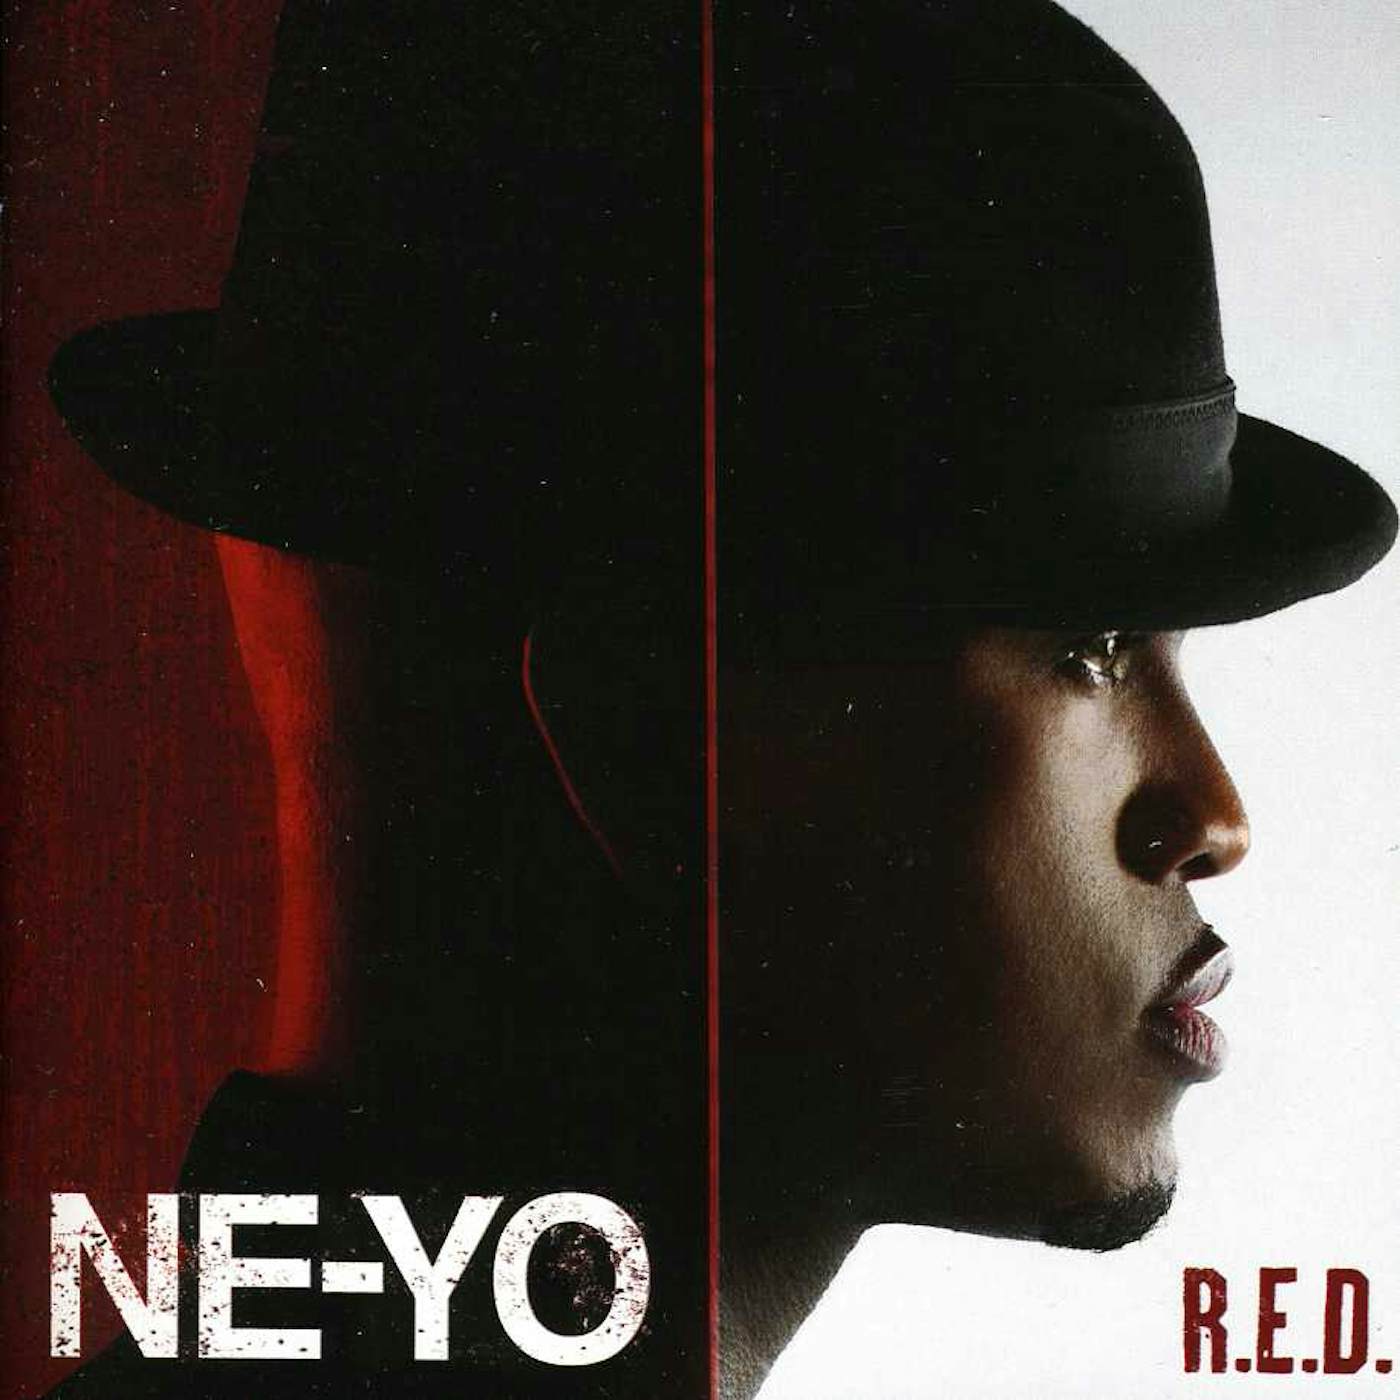 Ne-Yo R.E.D CD